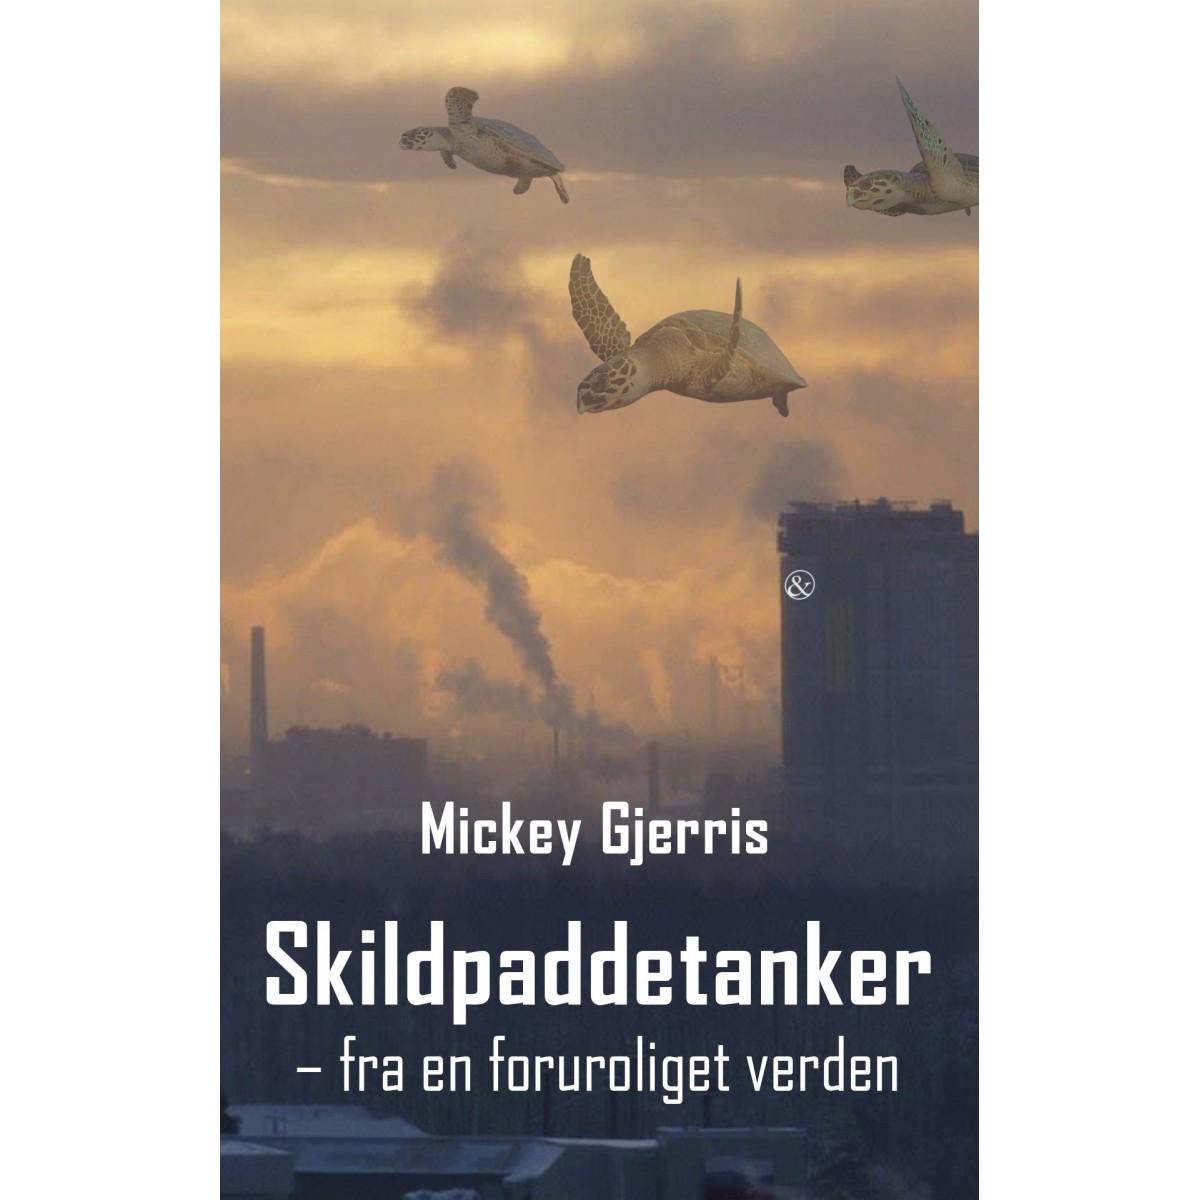 Mickaey Gjerris: Skildpaddetanker